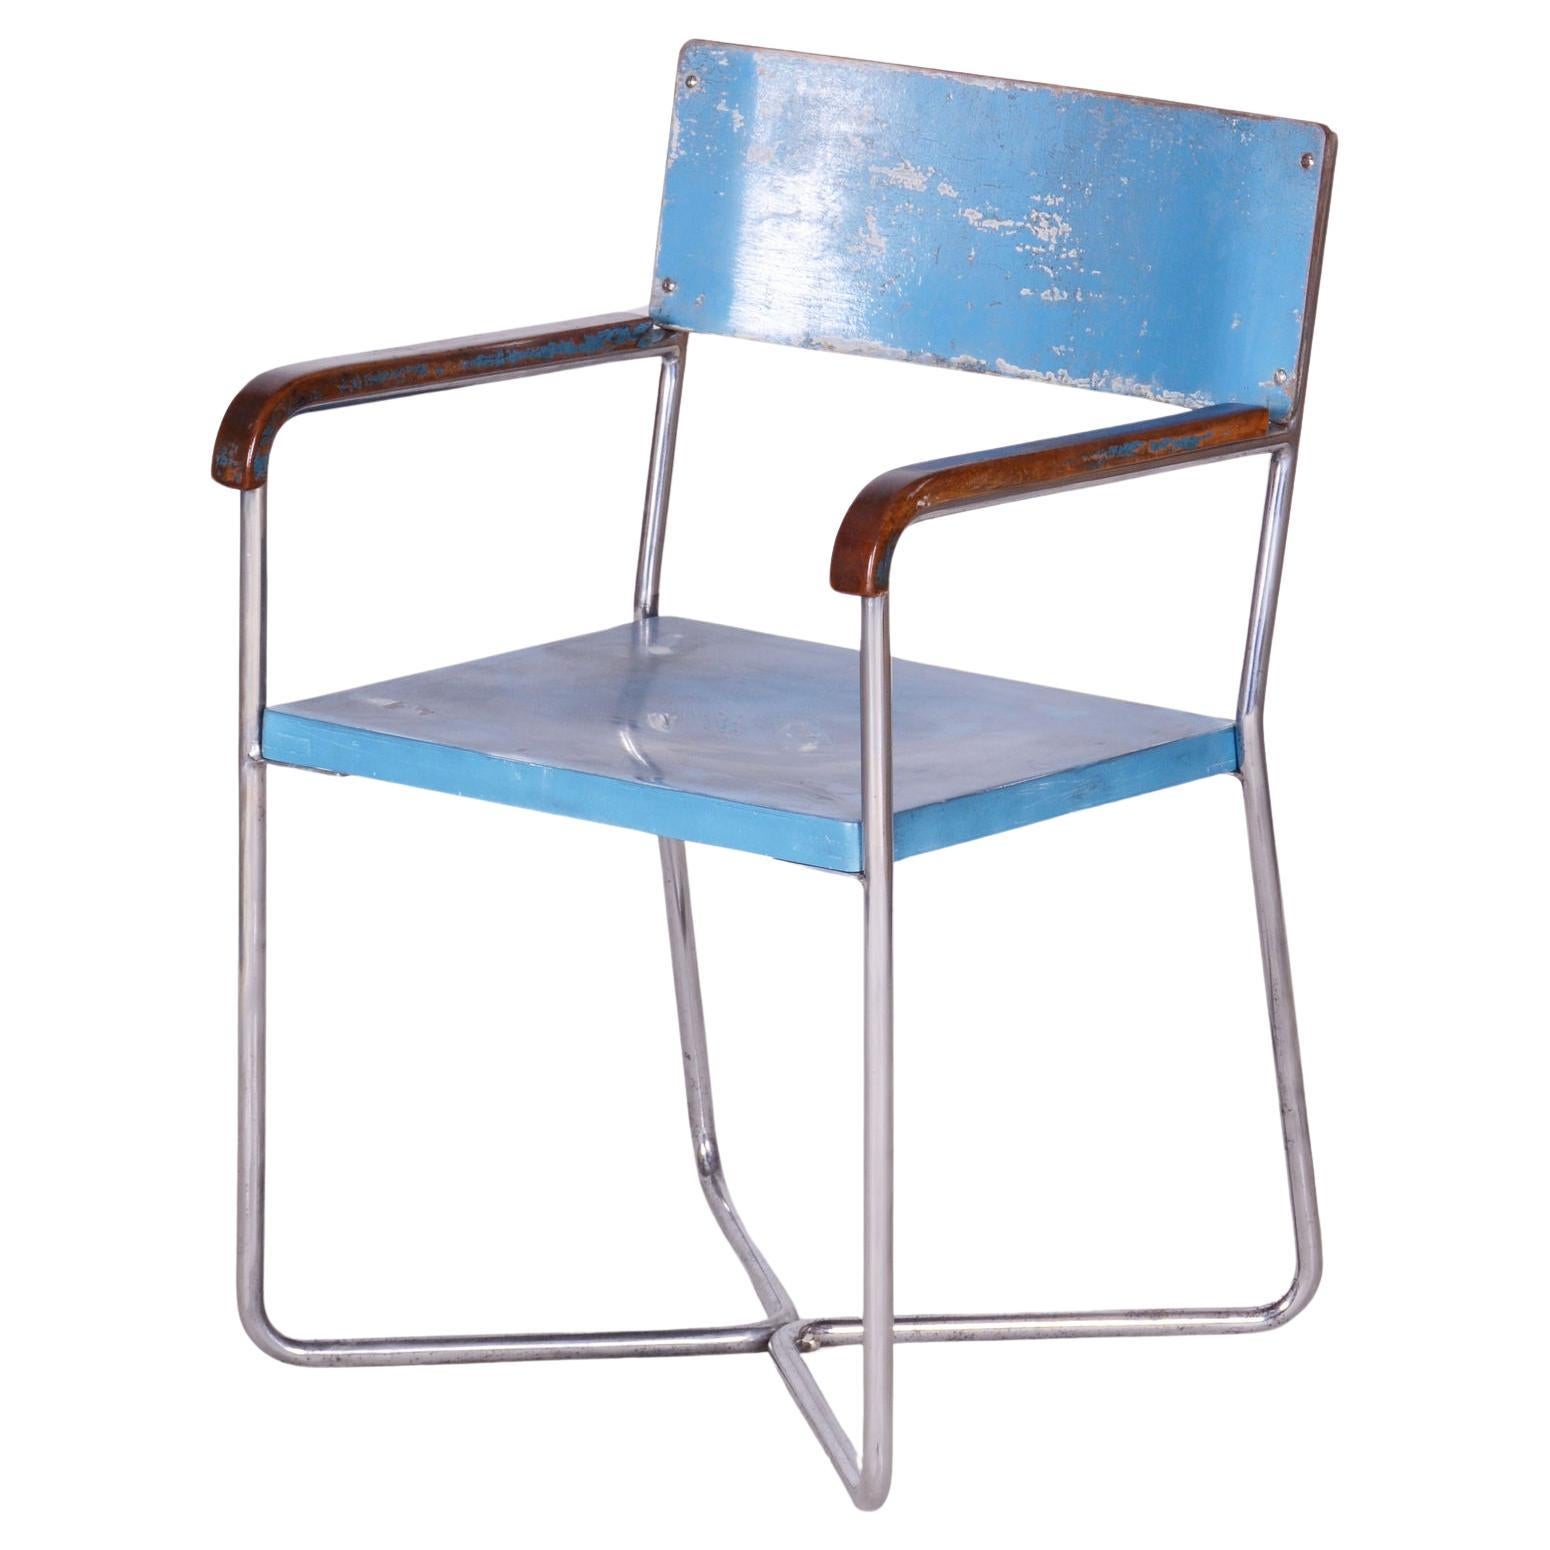 Mücke & Melder Chairs